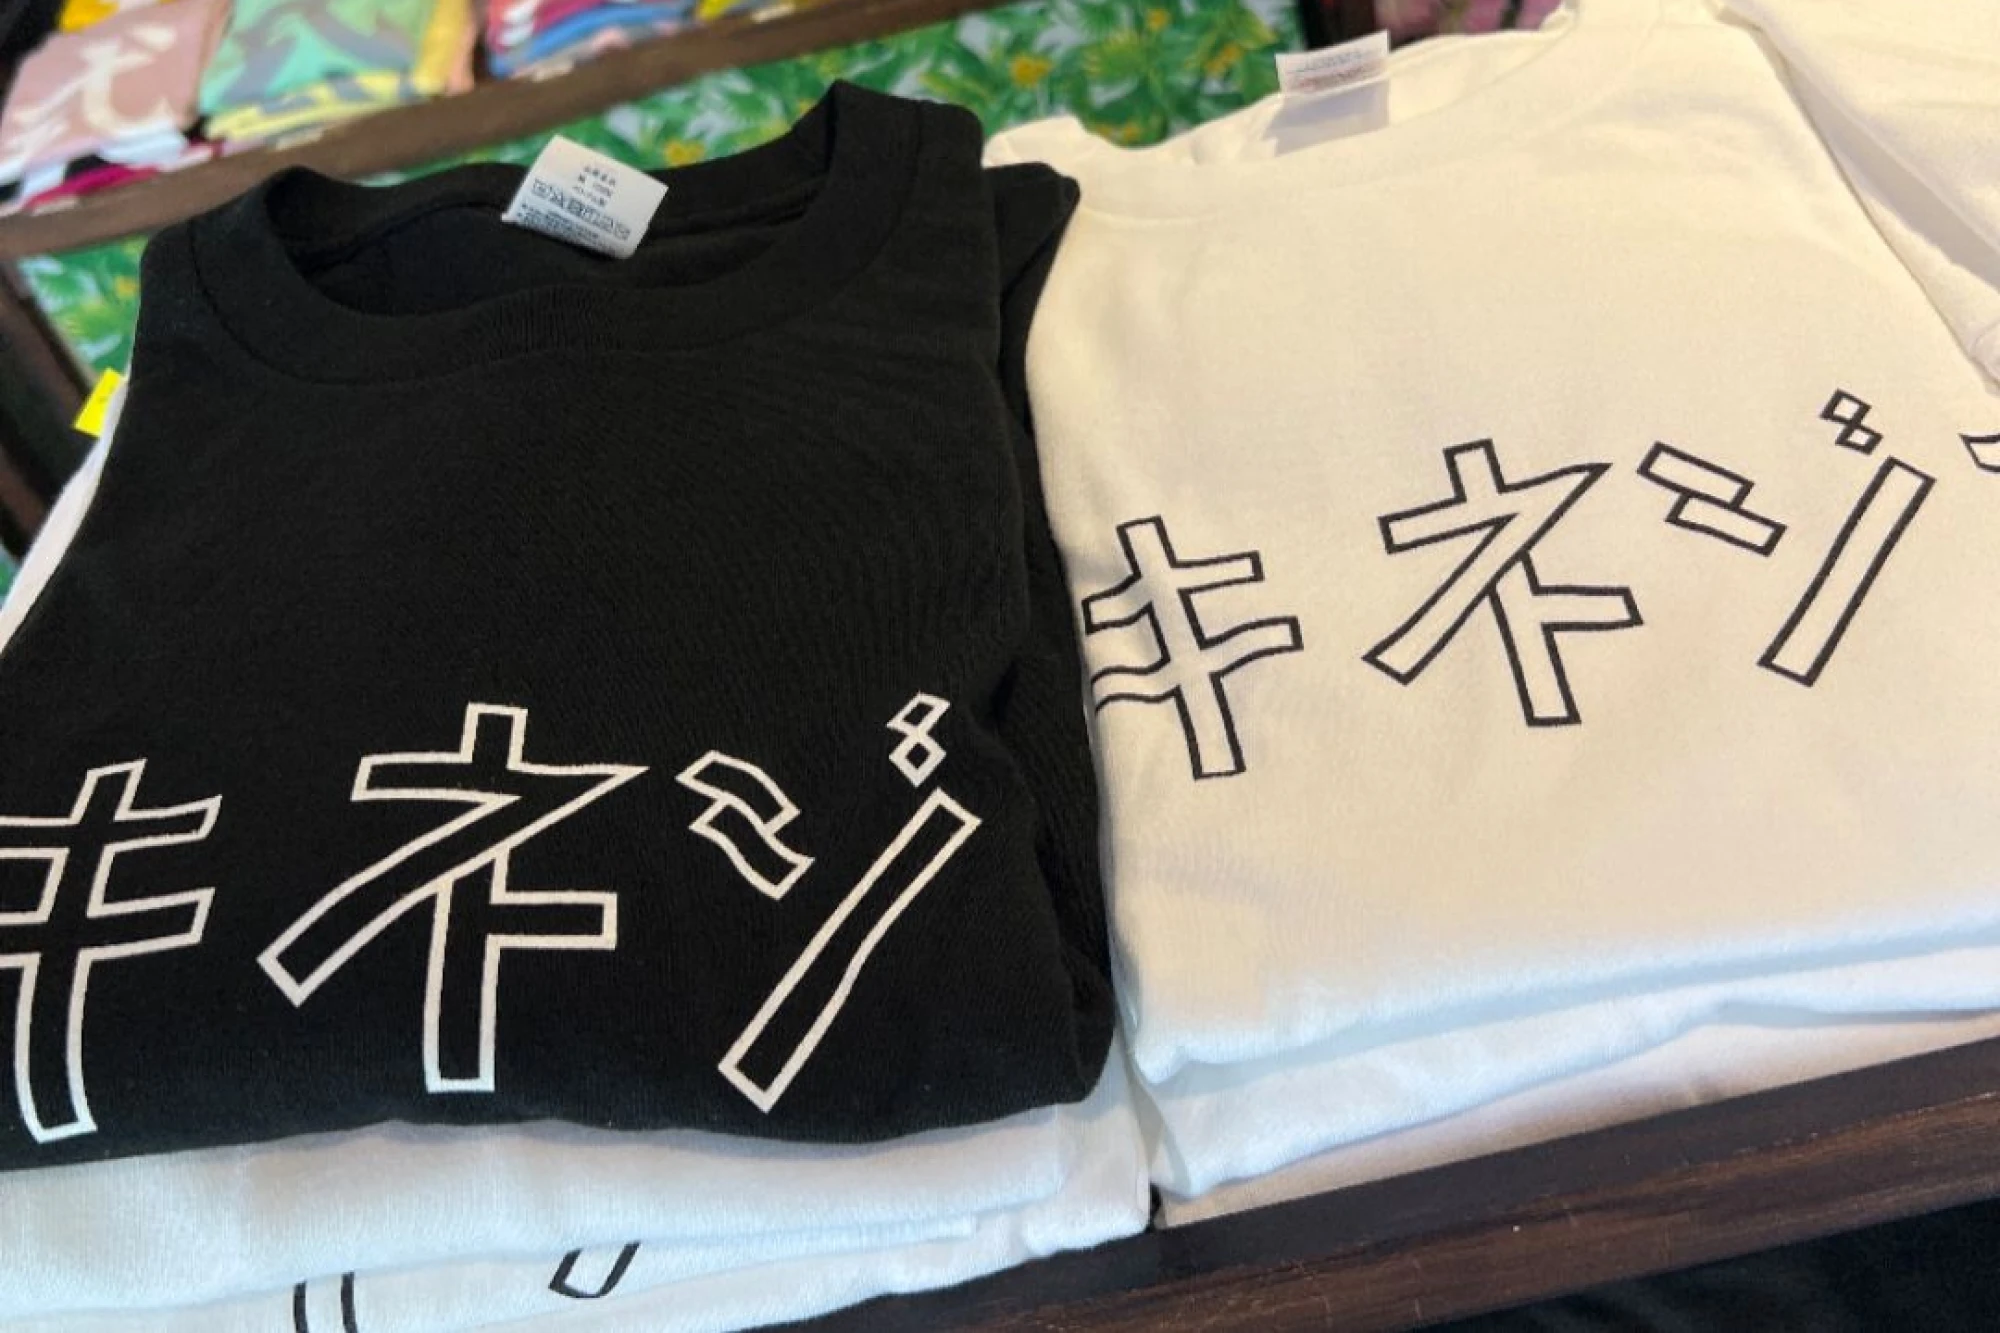 「レンタサイクルまんぼう」で販売されている「シキネジマ」の大きなカタカナのロゴが入ったTシャツ。シンプルな白地に黒文字、黒地に白文字の2色展開